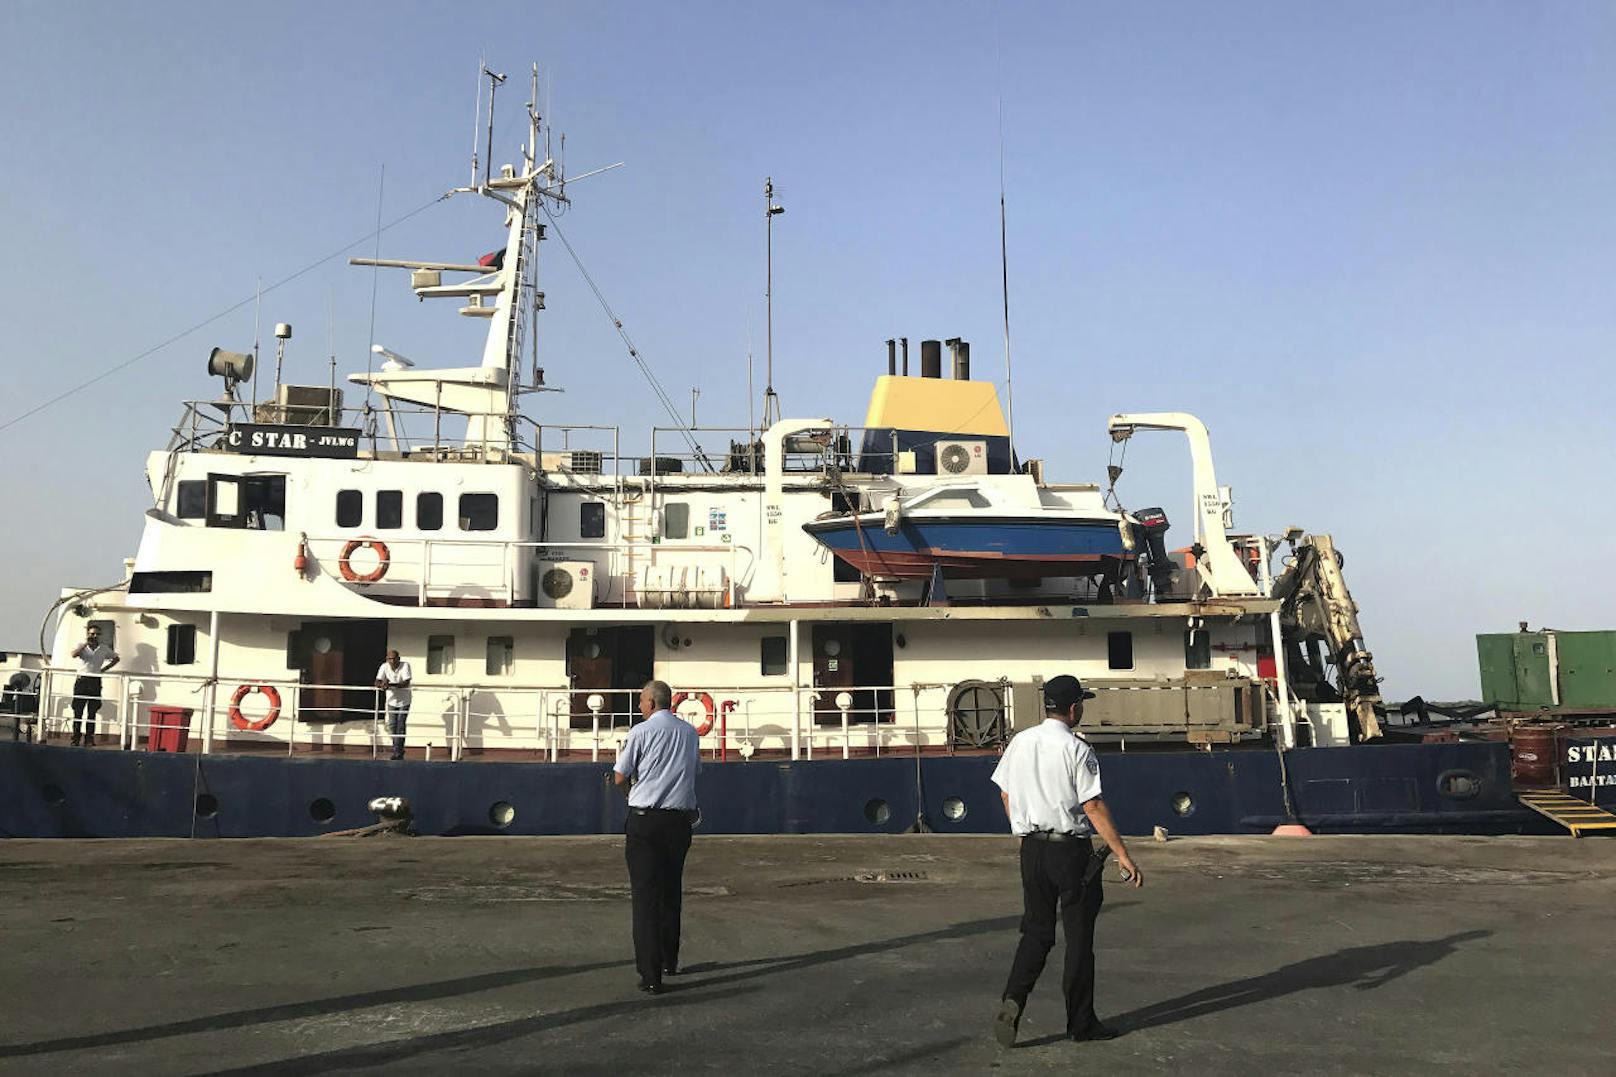 Einige der Crew-Mitglieder aus Sri Lanka beantragten in Zypern Asyl. Sie hatten für die Überfahrt bezahlt.